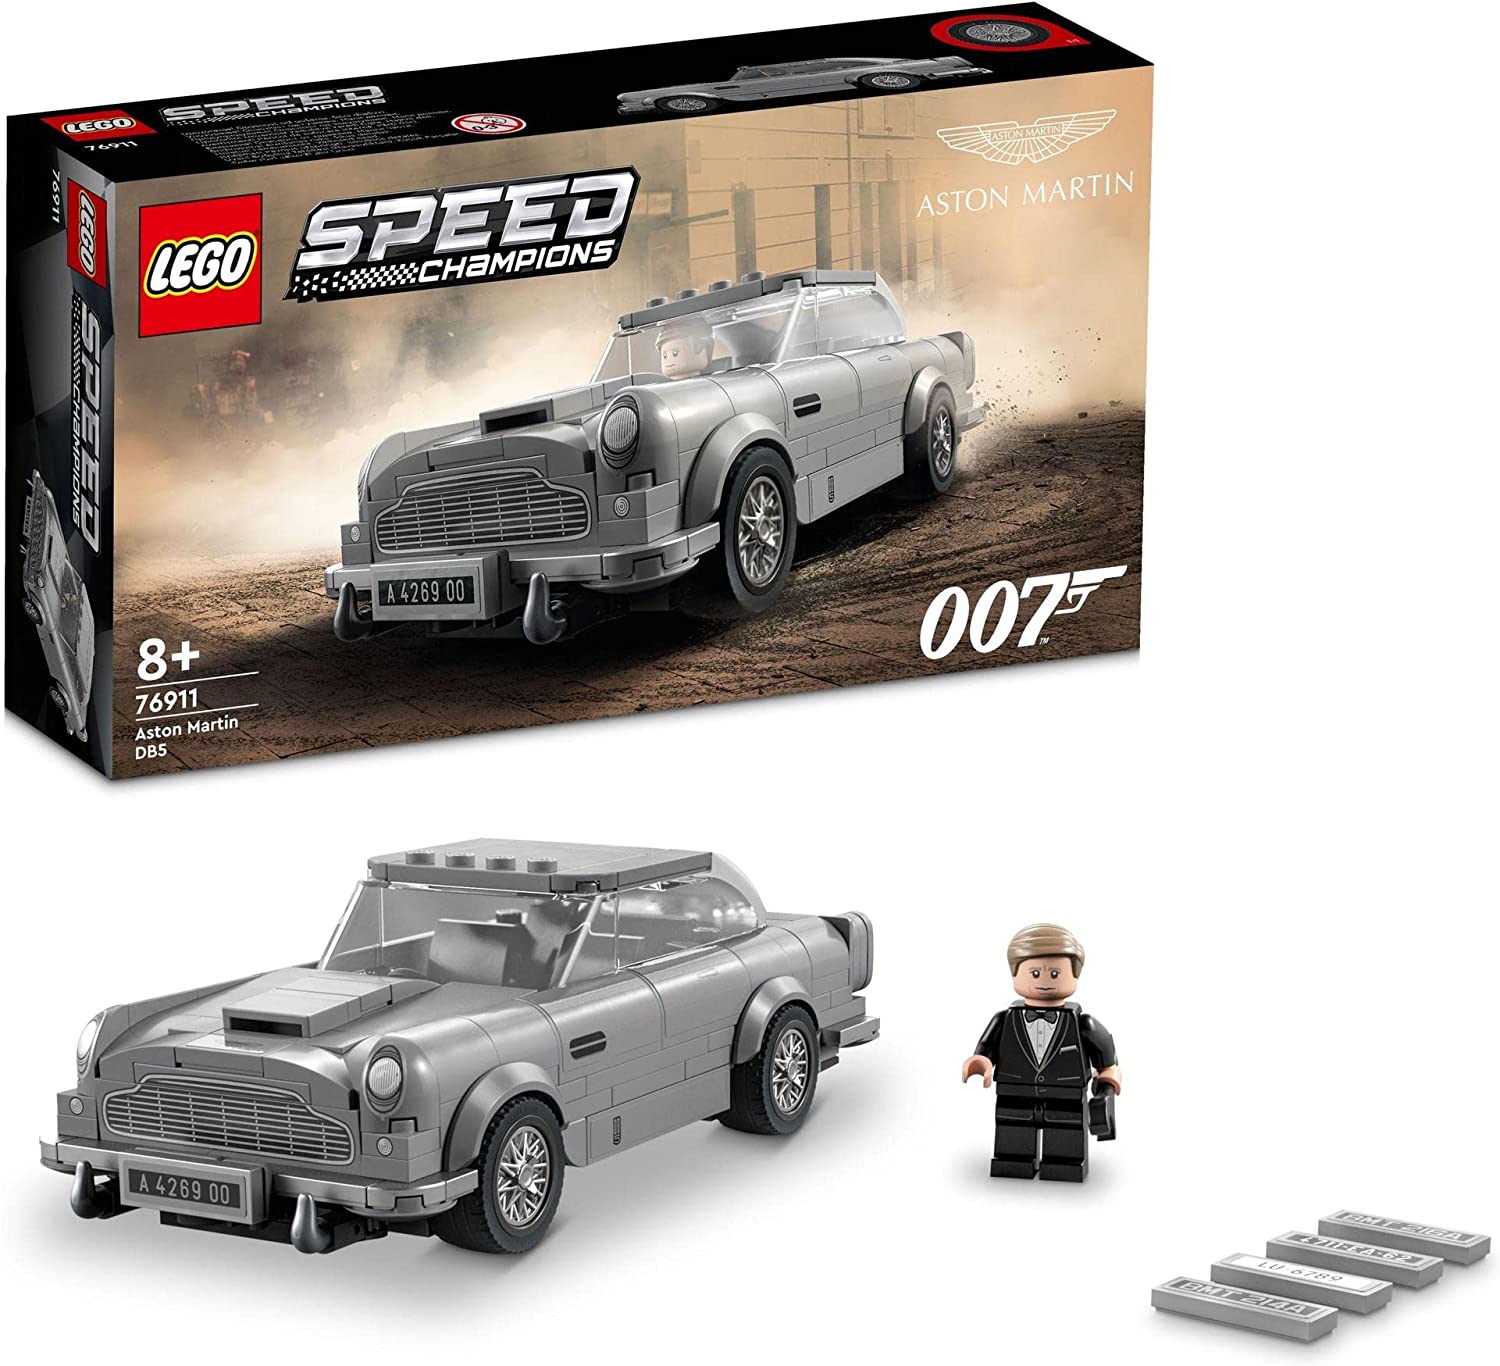 LEGO 樂高速度冠軍007 阿斯頓馬丁DB5 76911 玩具積木禮物車男孩8歲以上